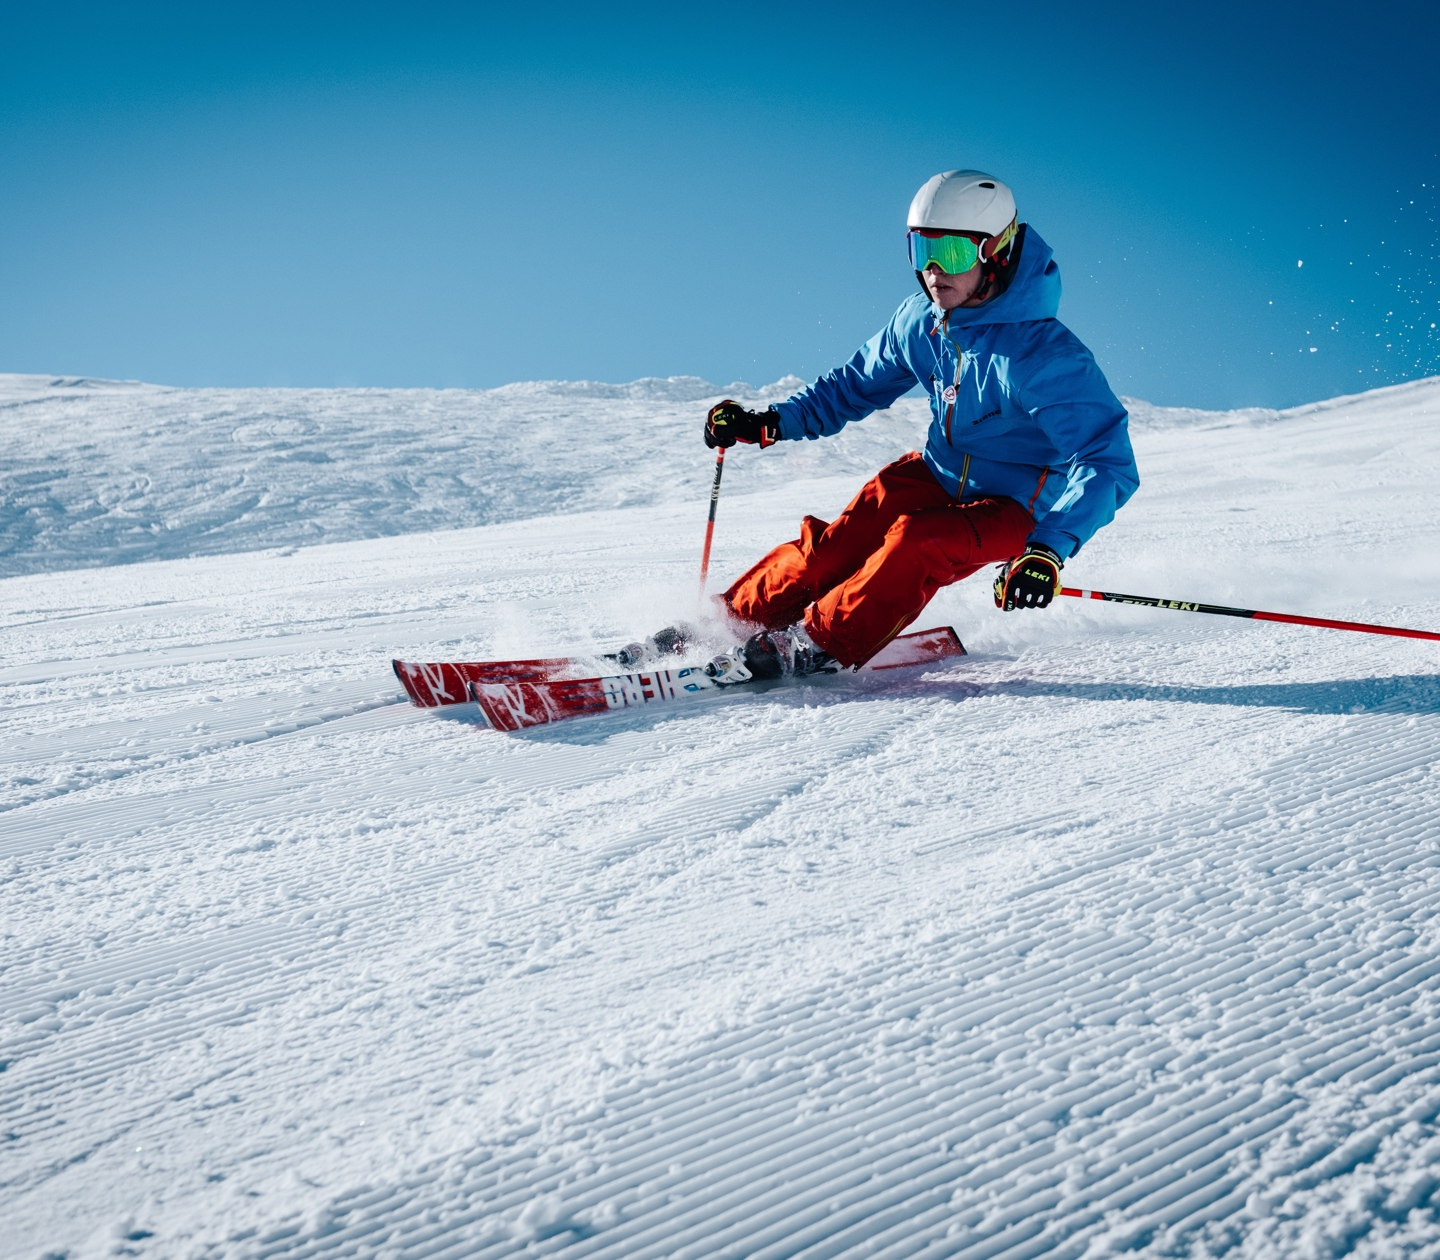 Man skiing down ski slope